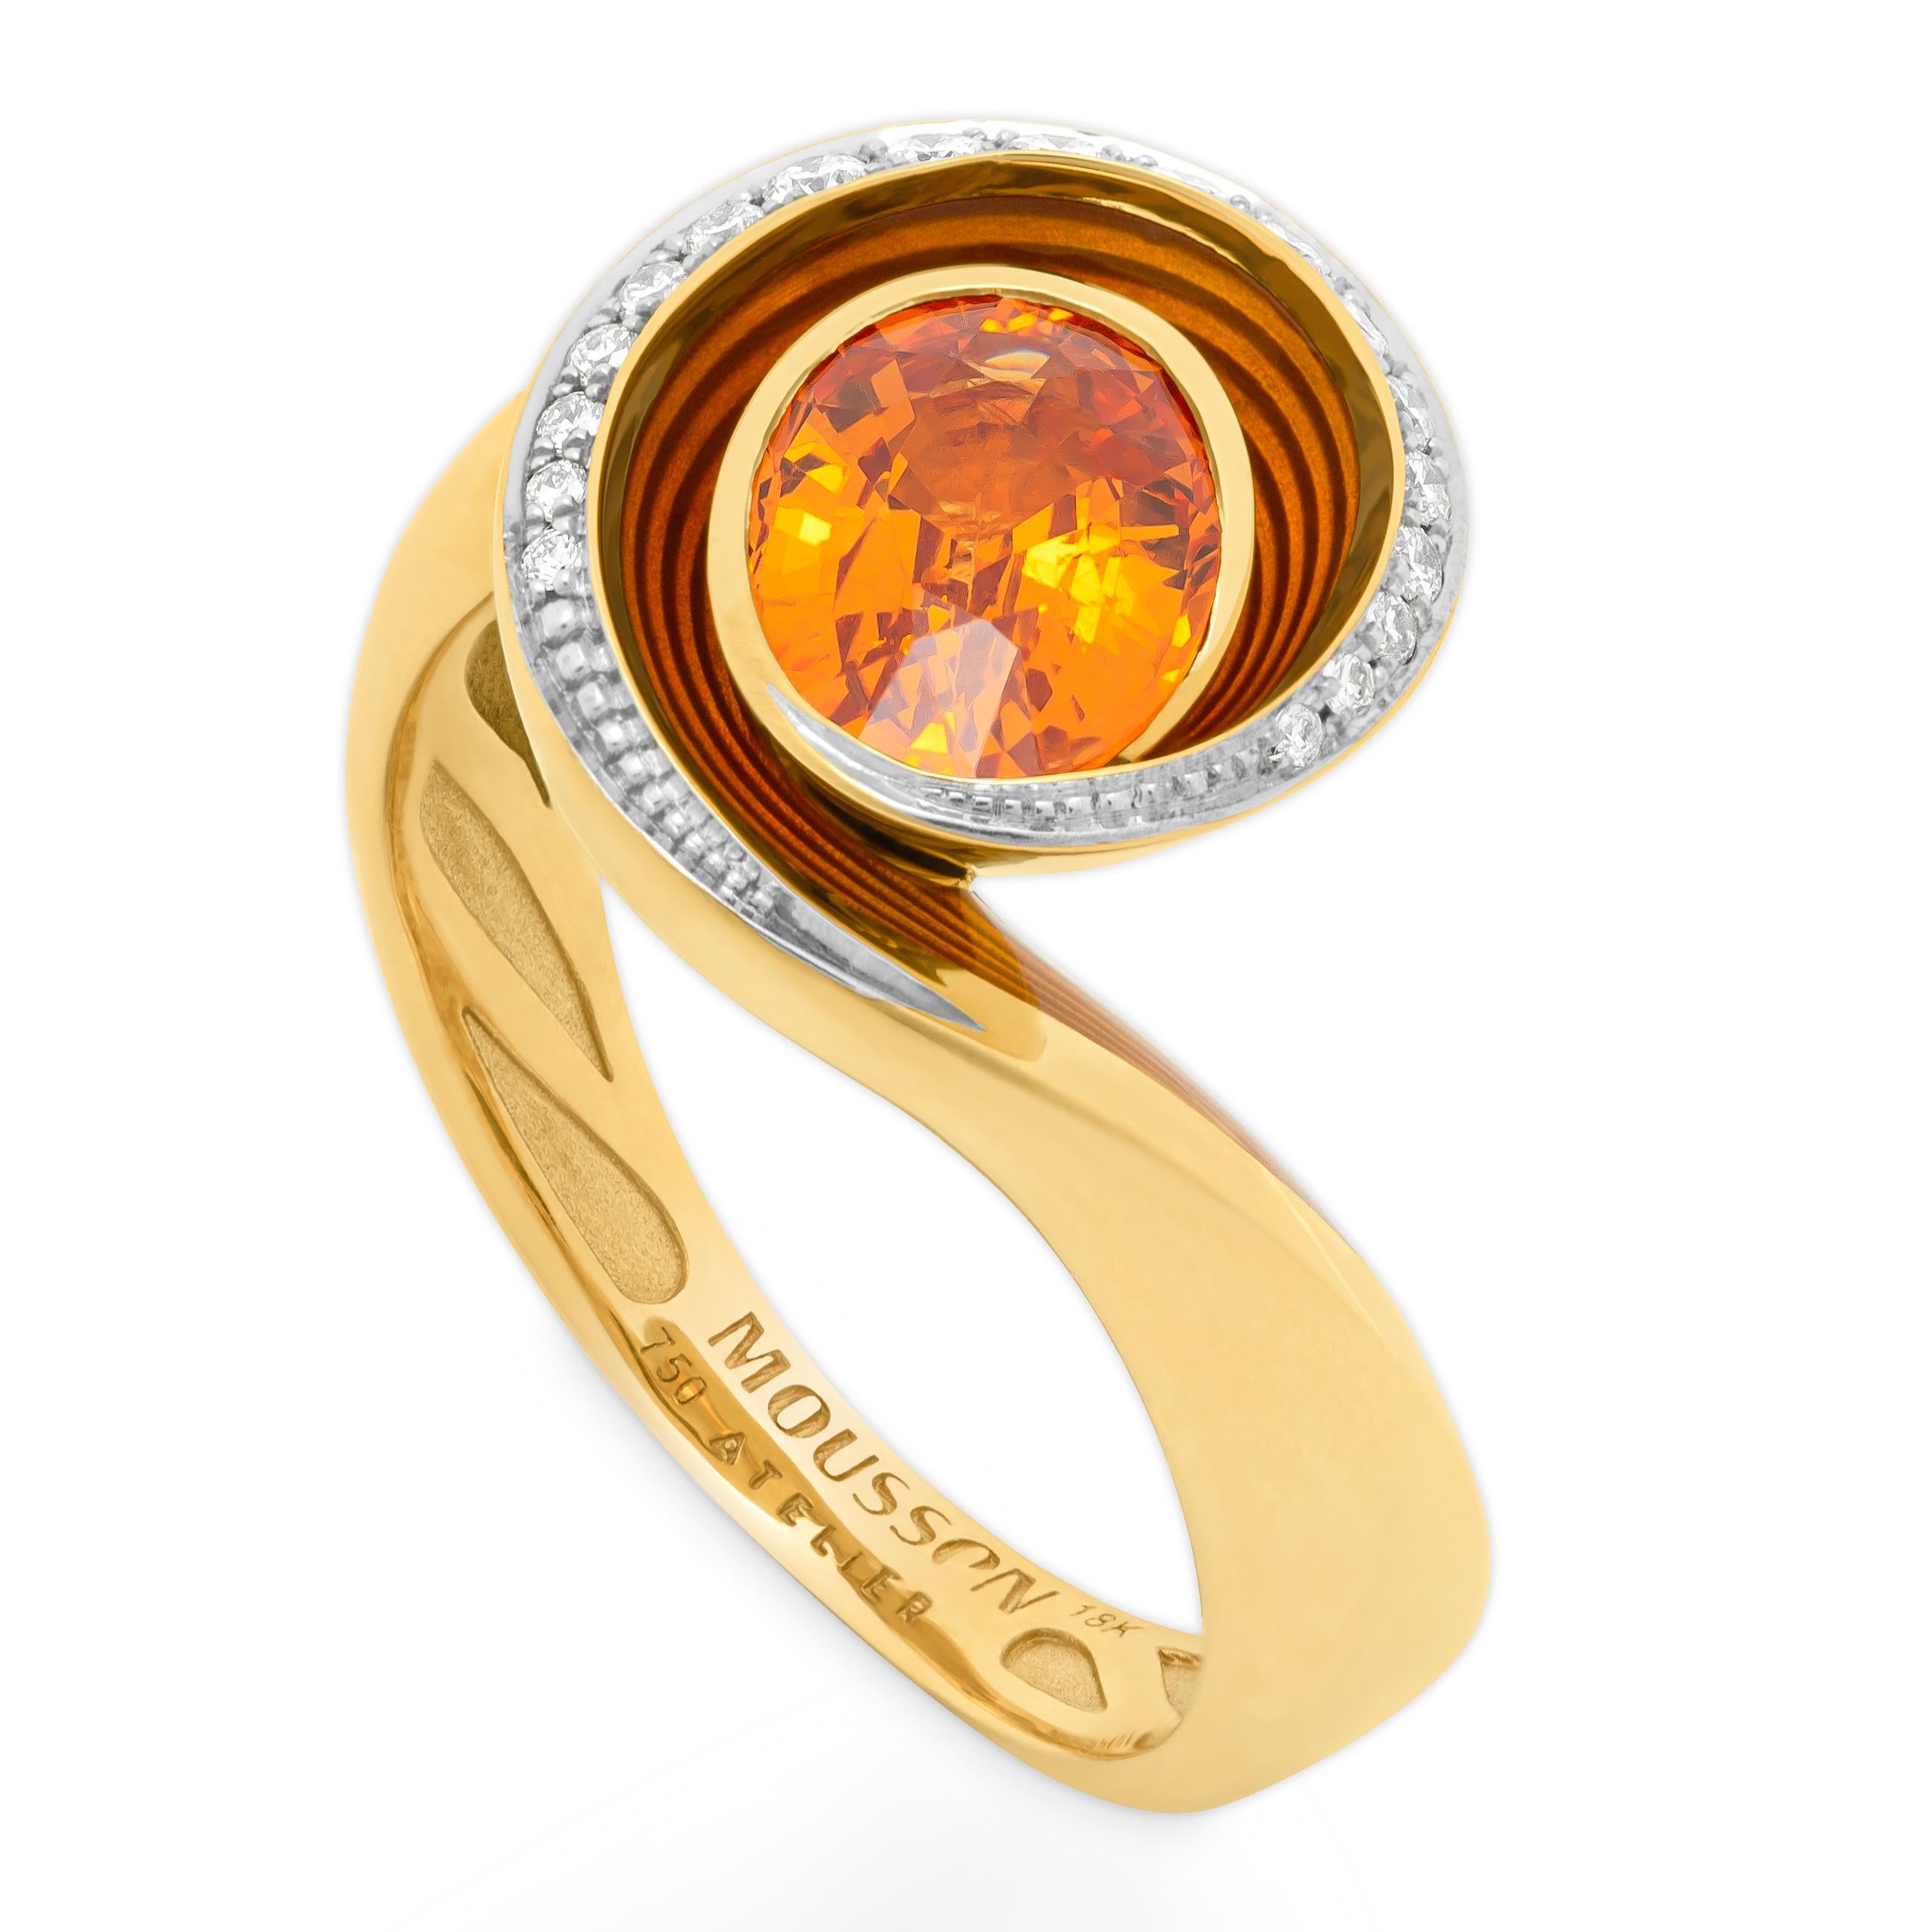 Spessartine Diamanten Emaille 18 Karat Gelbgold Geschmolzene Farben Ring
Unsere neue Kollektion 